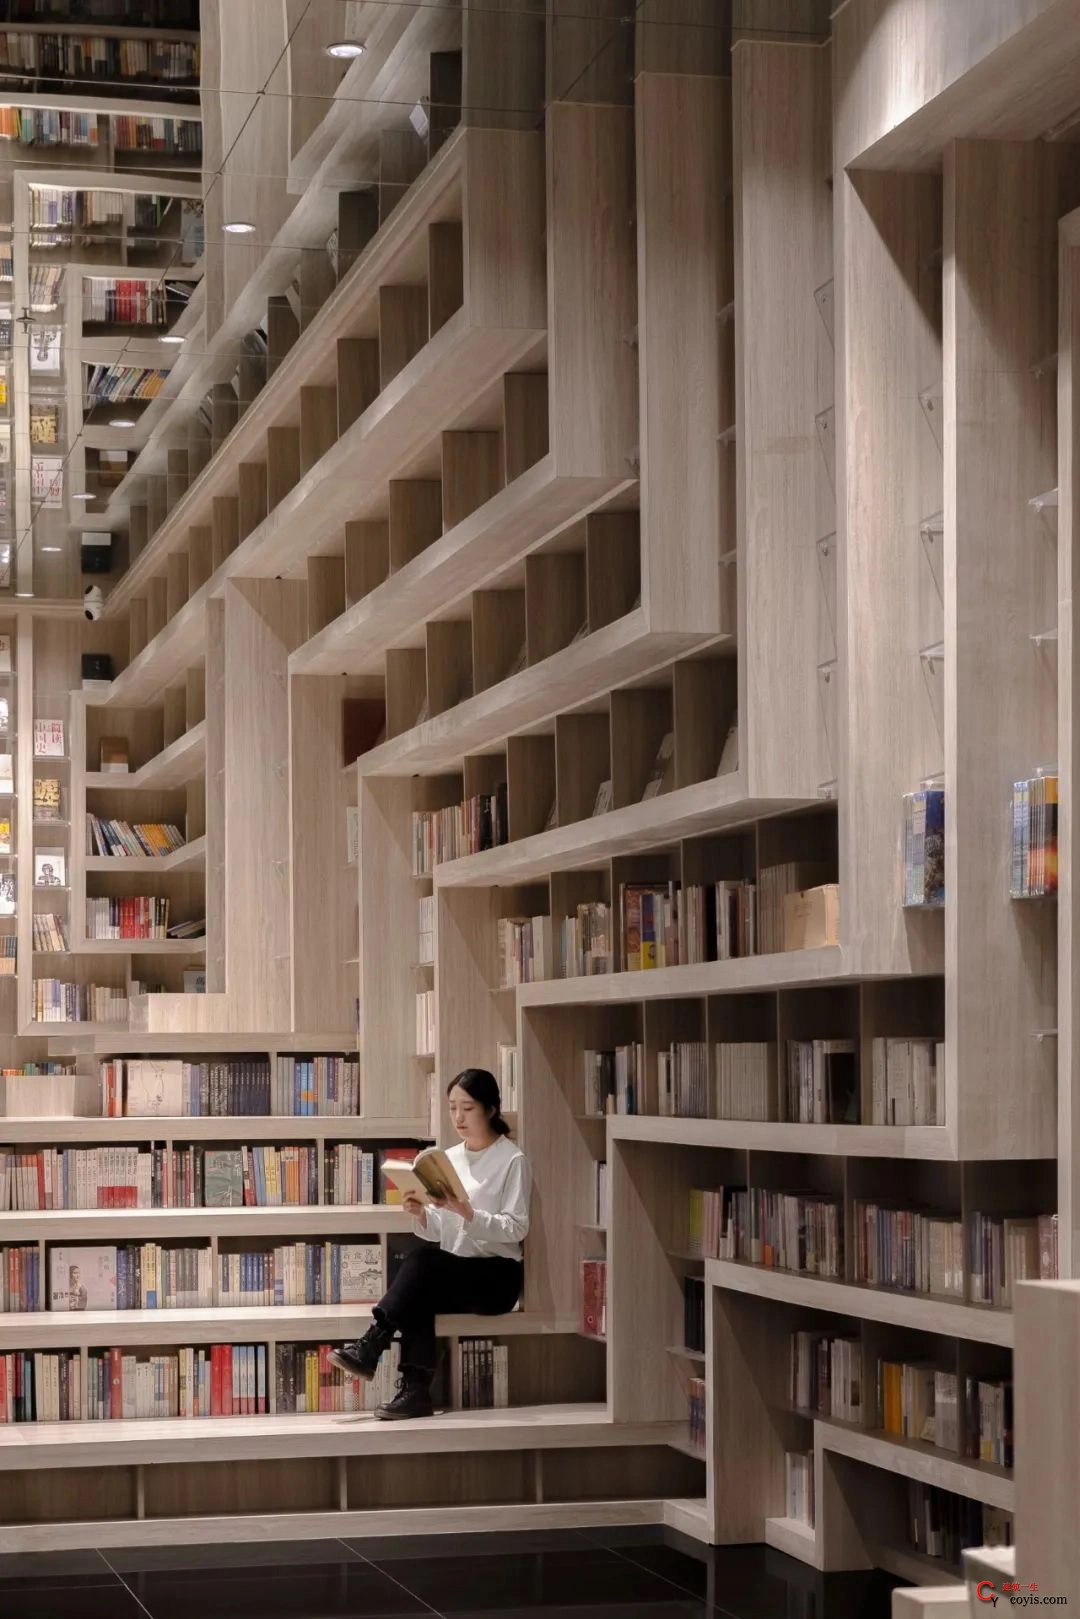 斐波影院X鐘書閣丨一家藏在書店里的電影院，打造出了文藝愛好者的天堂 / 唯想國際